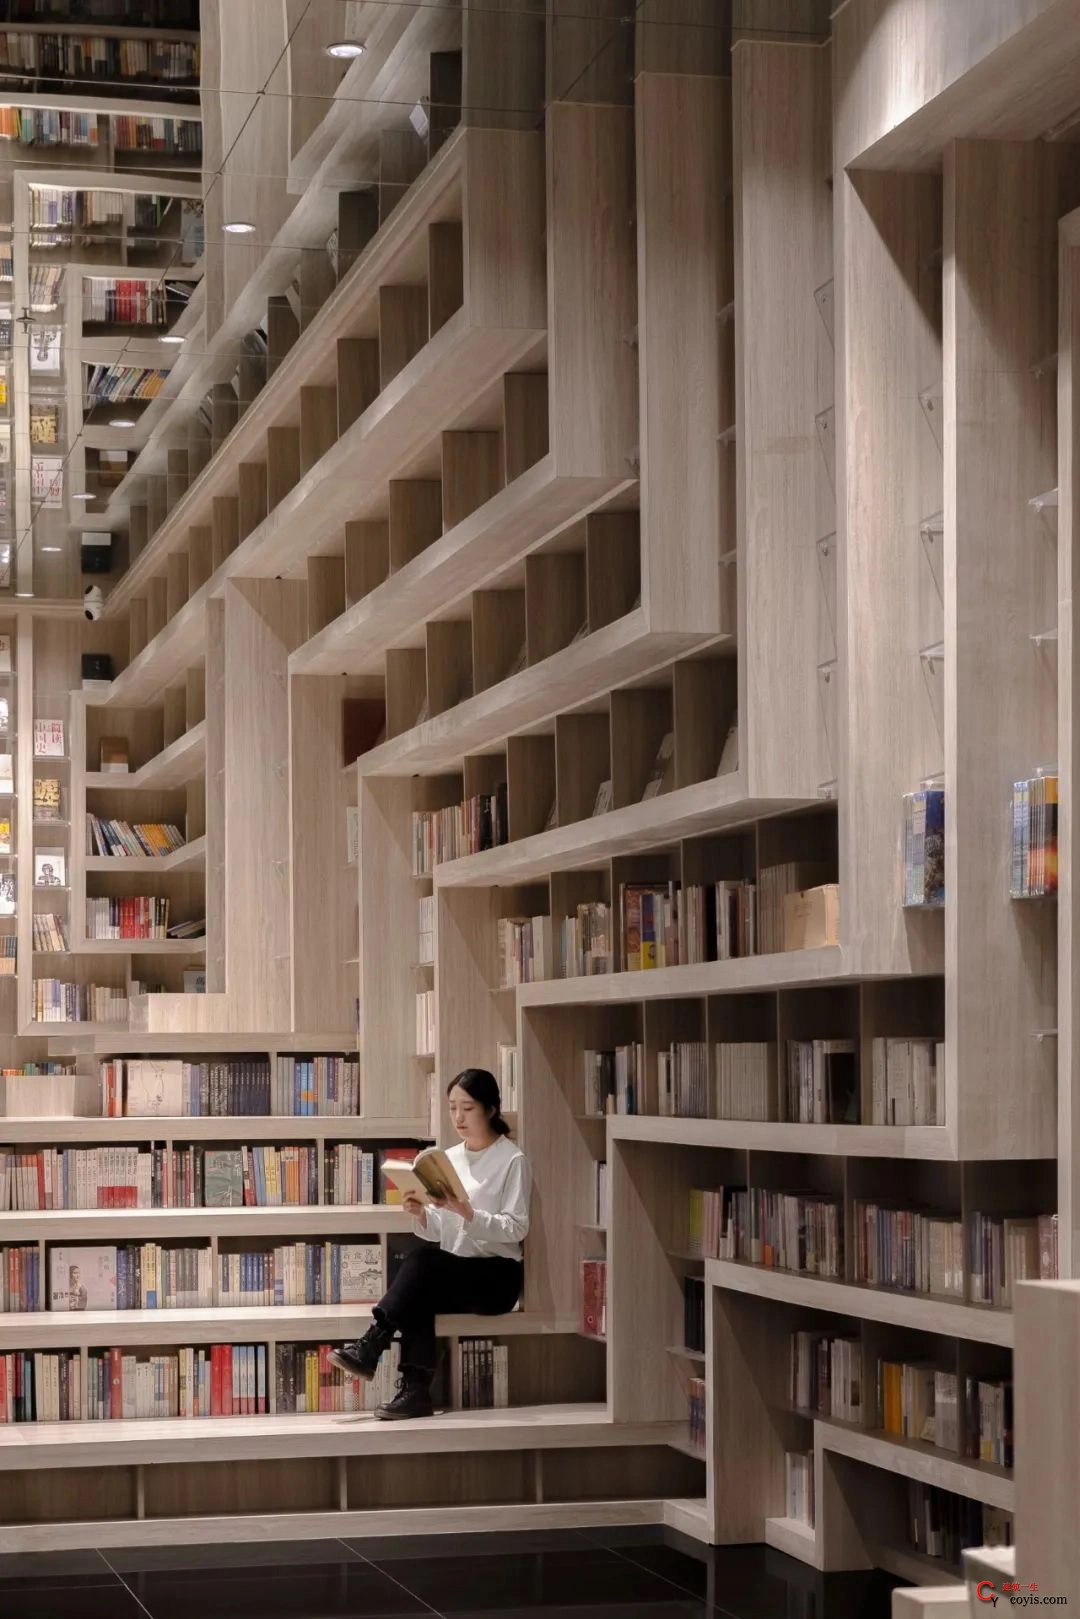 斐波影院X鐘書閣丨一家藏在書店里的電影院，打造出了文藝愛好者的天堂 / 唯想國際